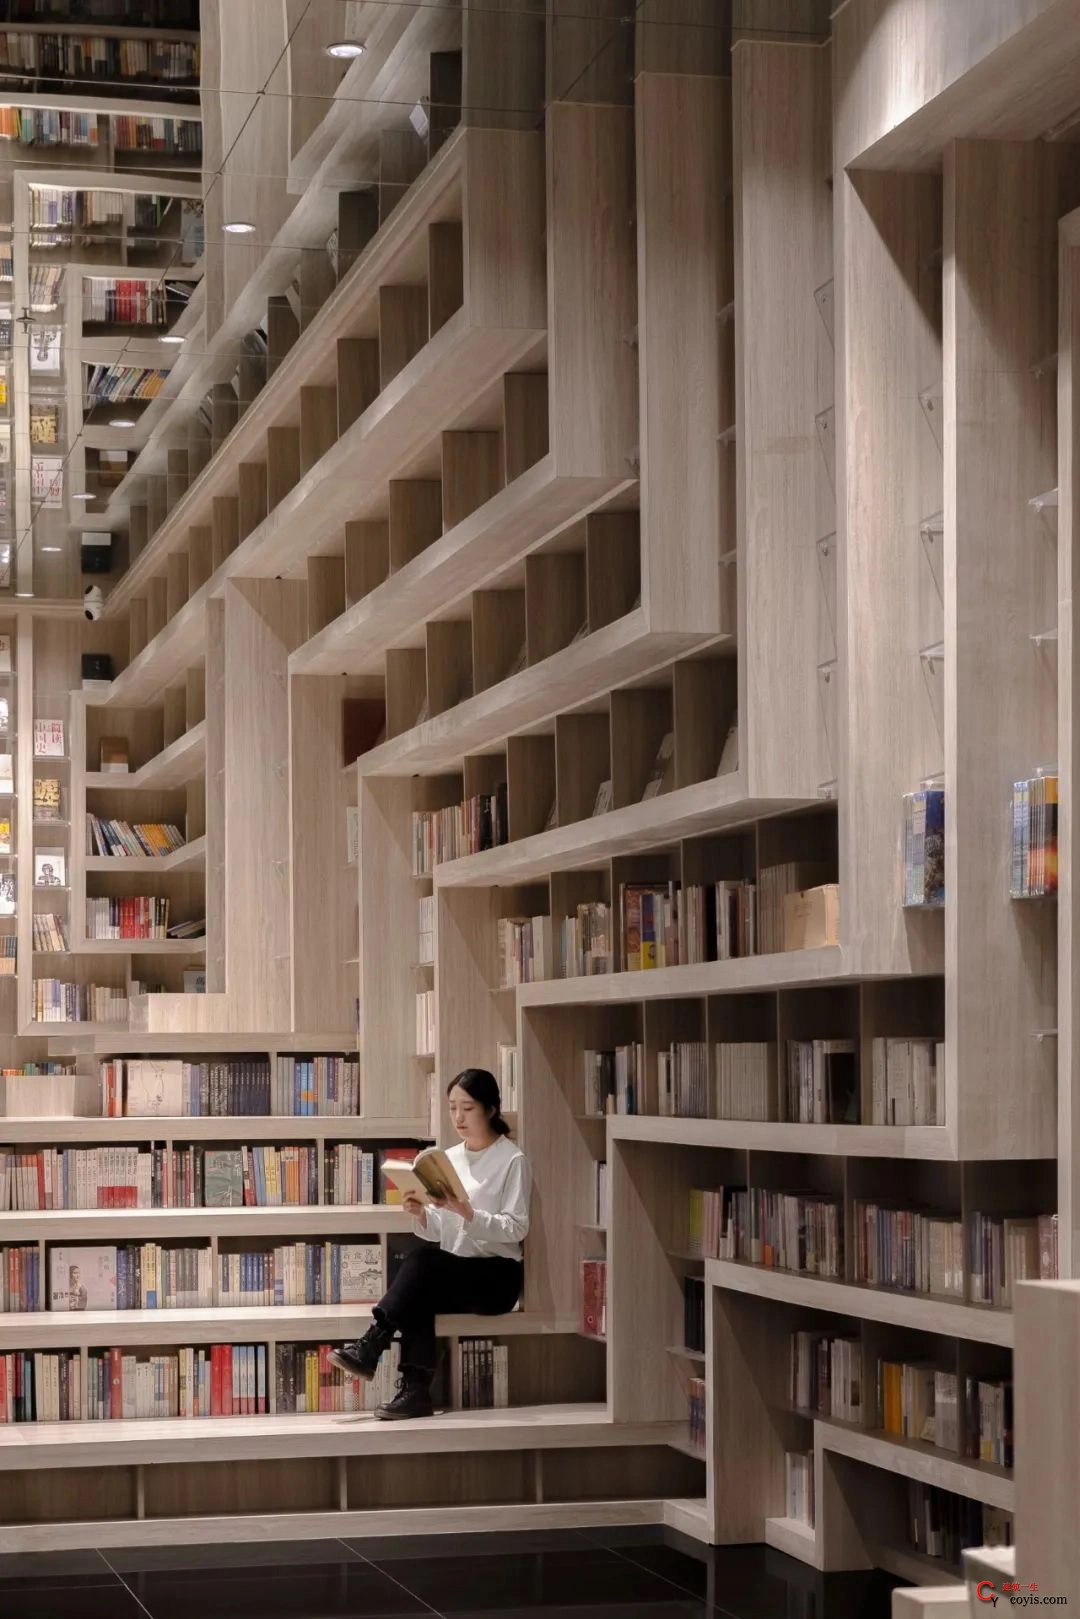 斐波影院X鐘書閣丨一家藏在書店里的電影院，打造出了文藝愛好者的天堂 / 唯想國際